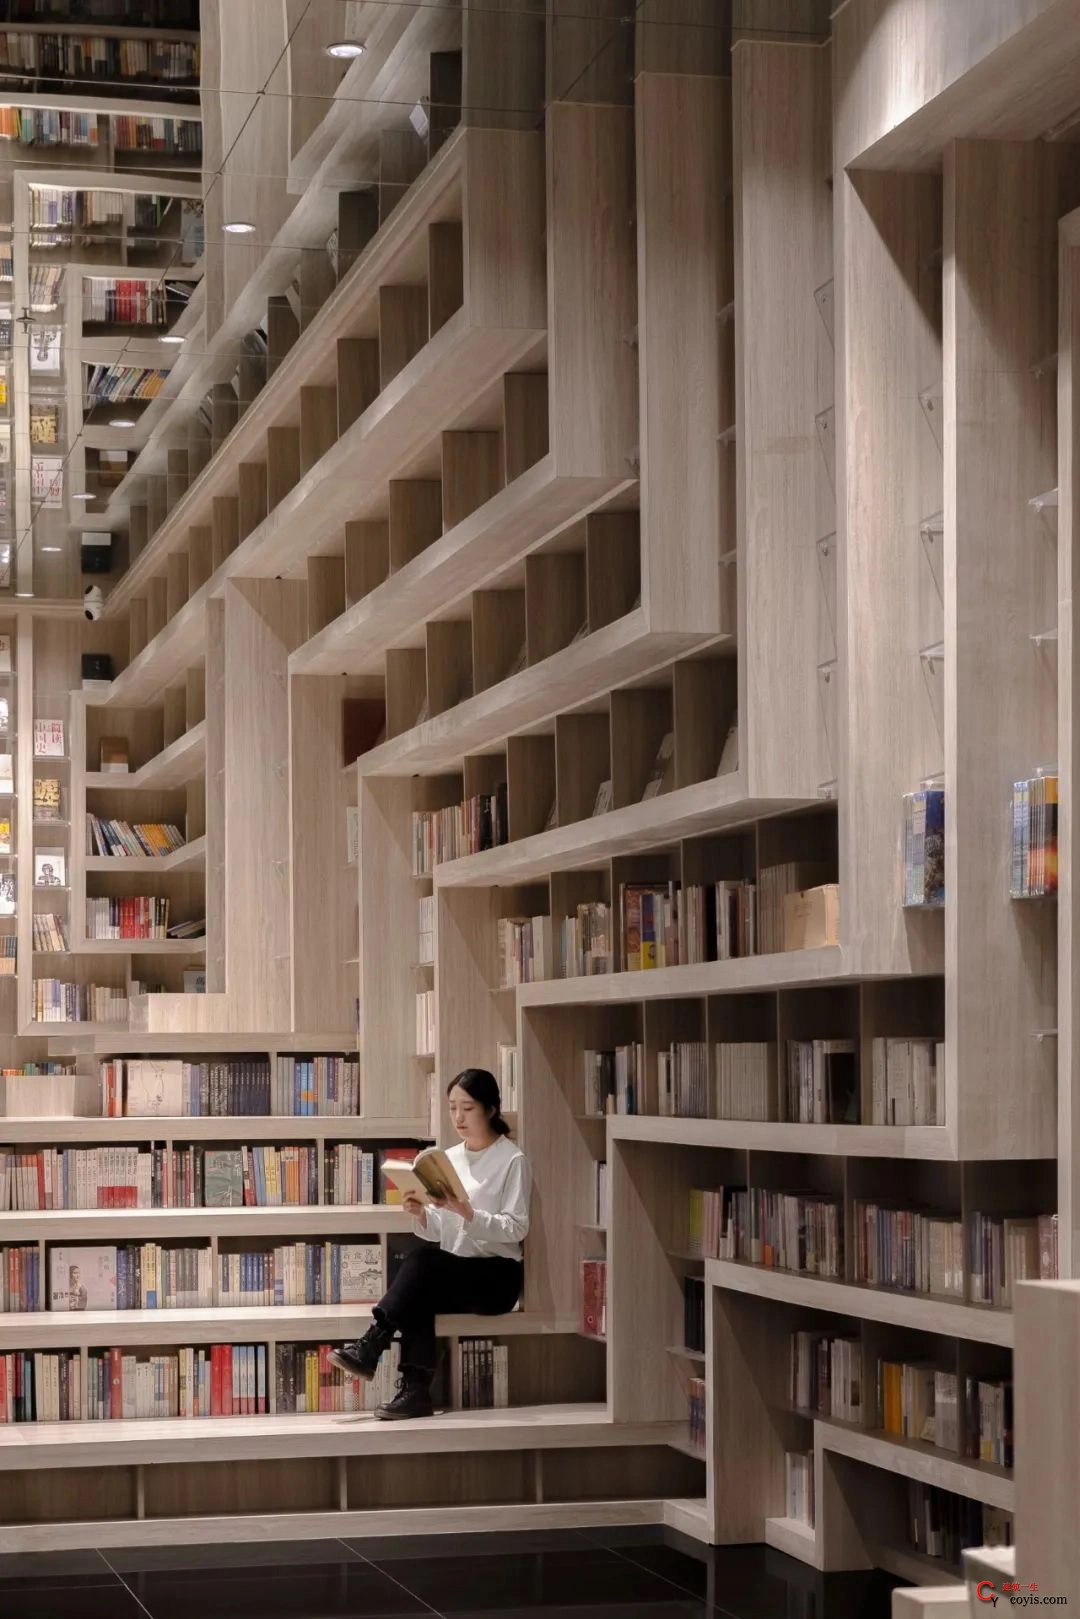 斐波影院X鐘書閣丨一家藏在書店里的電影院，打造出了文藝愛好者的天堂 / 唯想國際